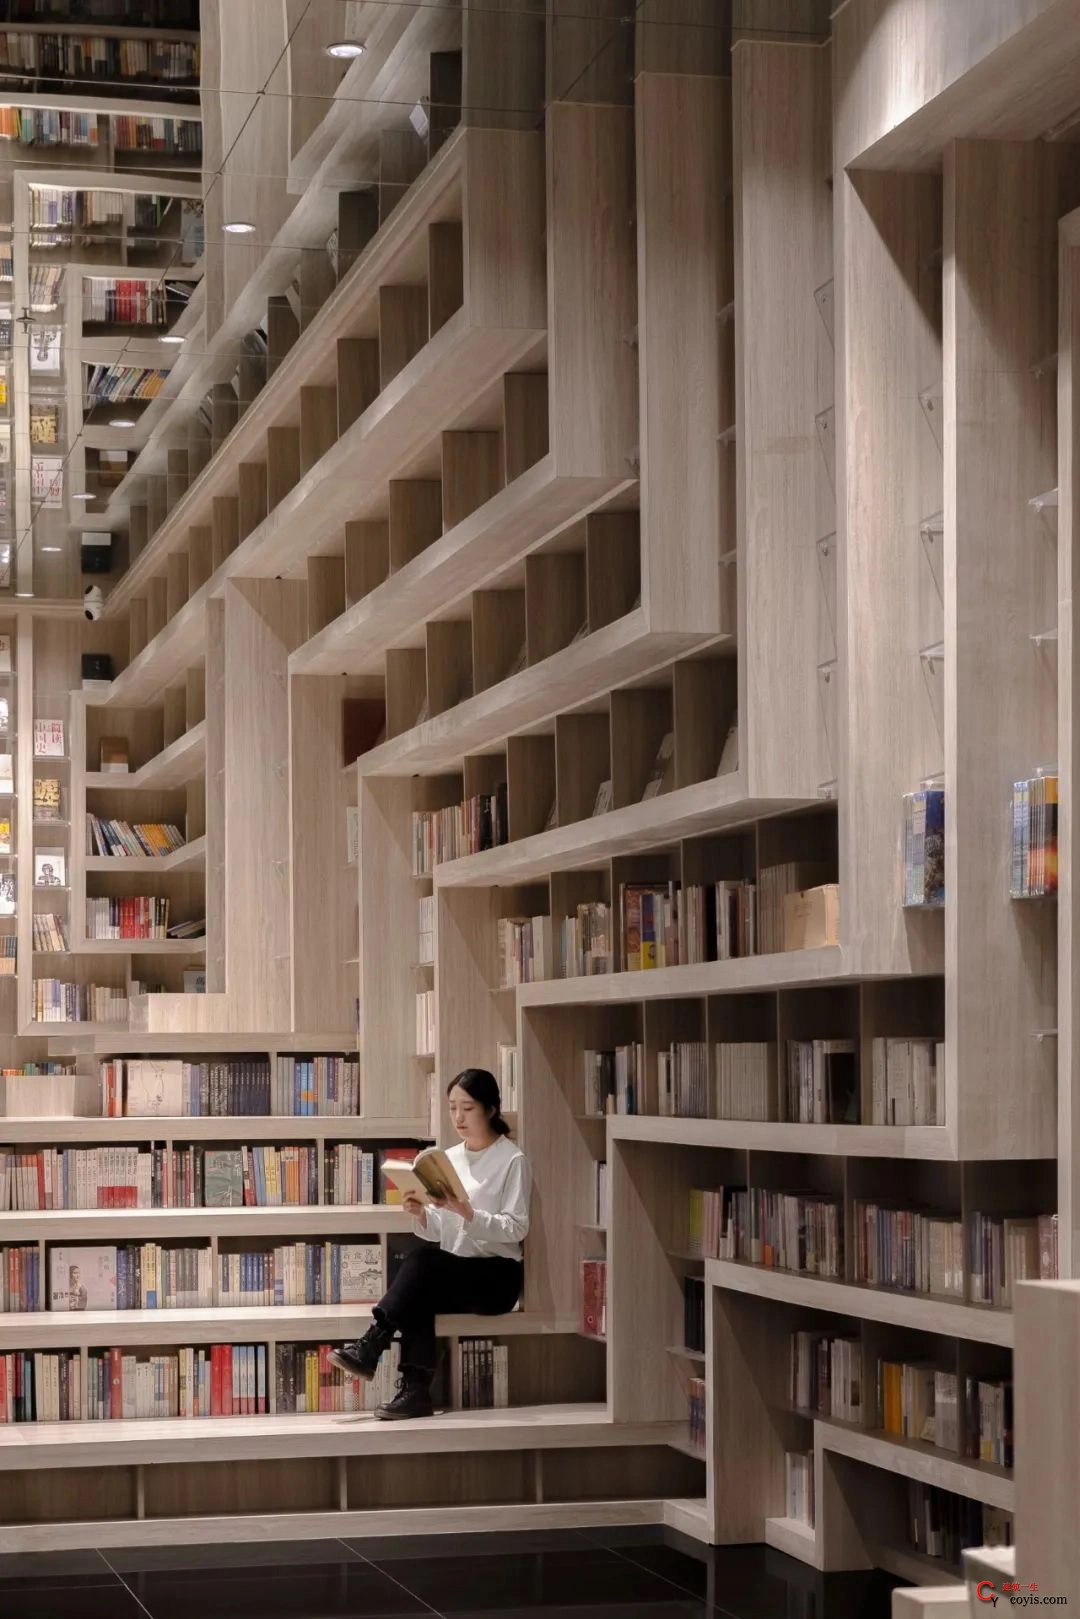 斐波影院X鐘書閣丨一家藏在書店里的電影院，打造出了文藝愛好者的天堂 / 唯想國際